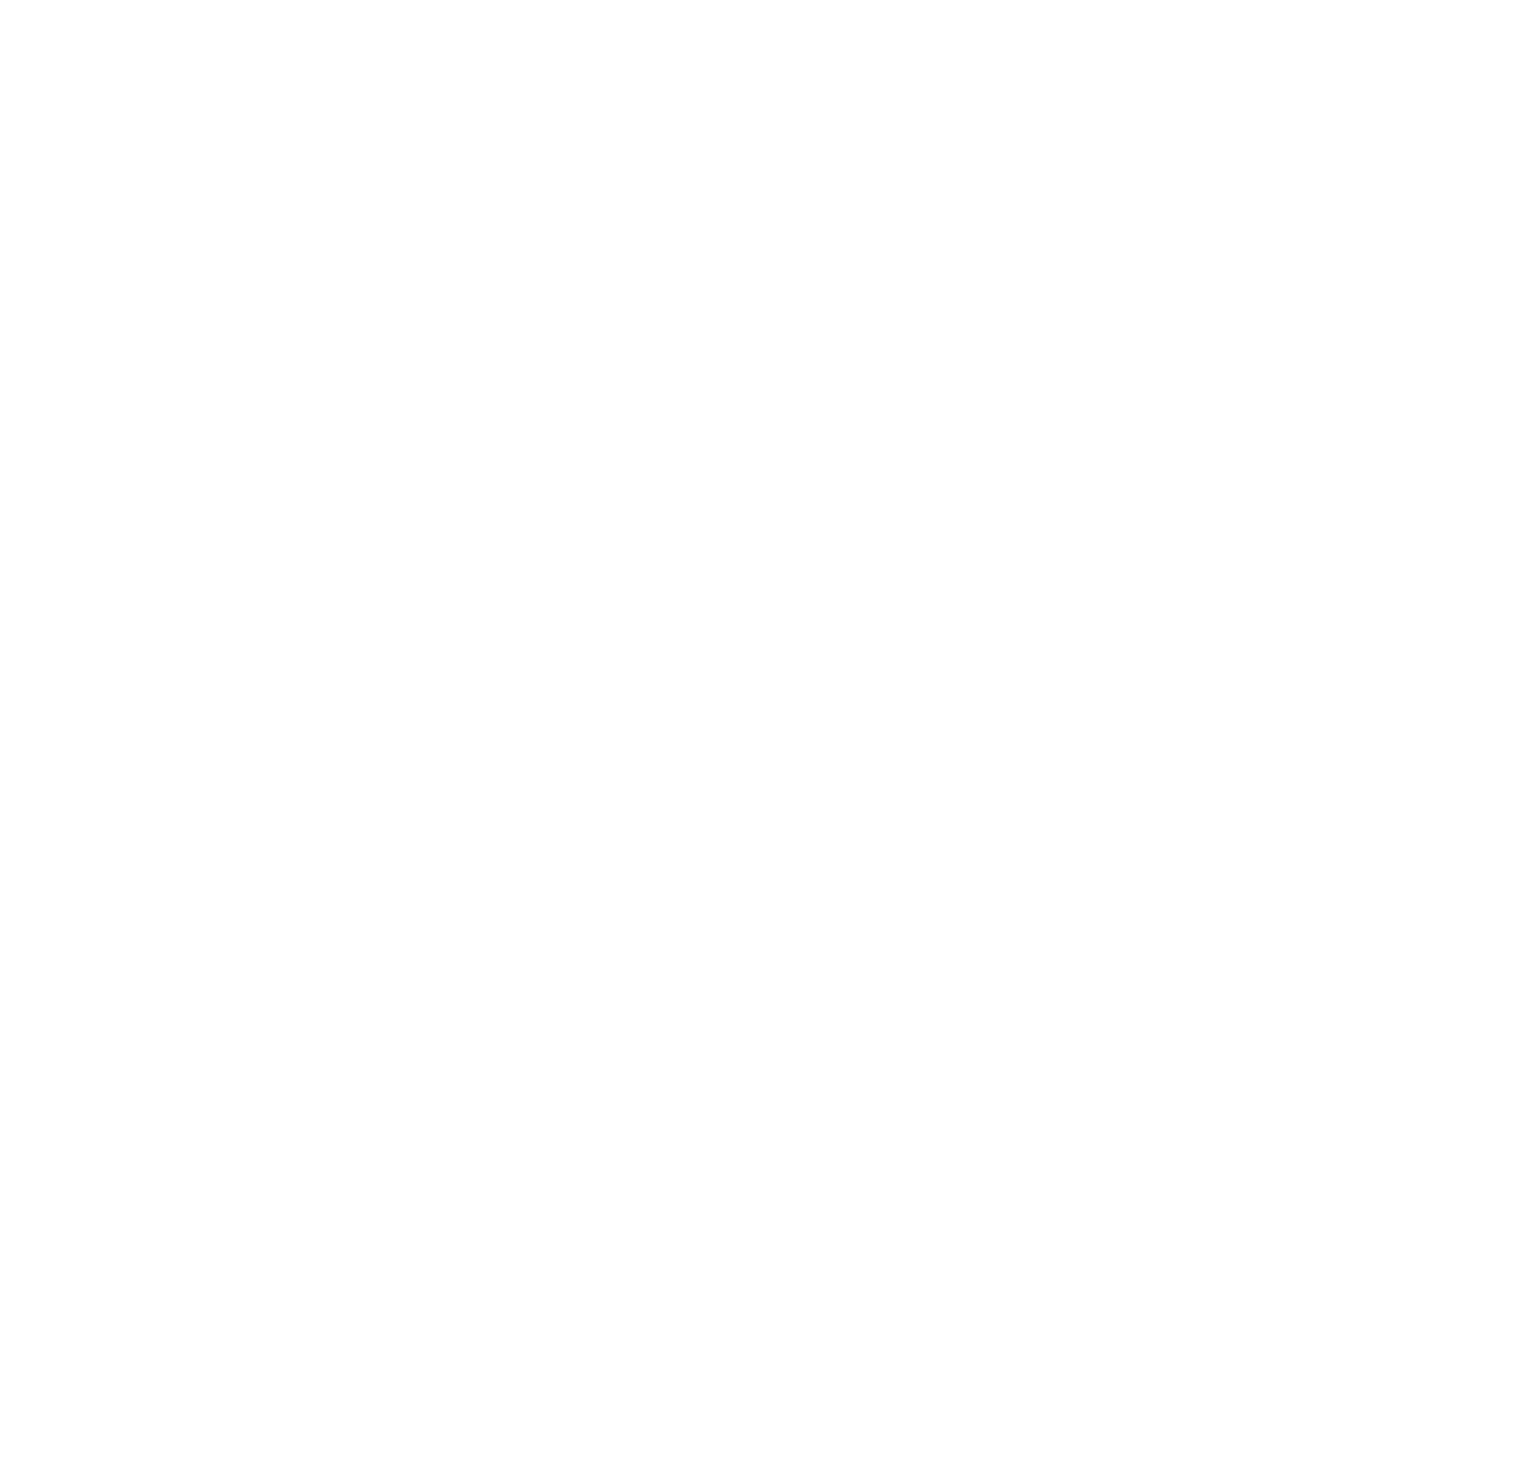 C&S Wholesale Grocers logo pour fonds sombres (PNG transparent)